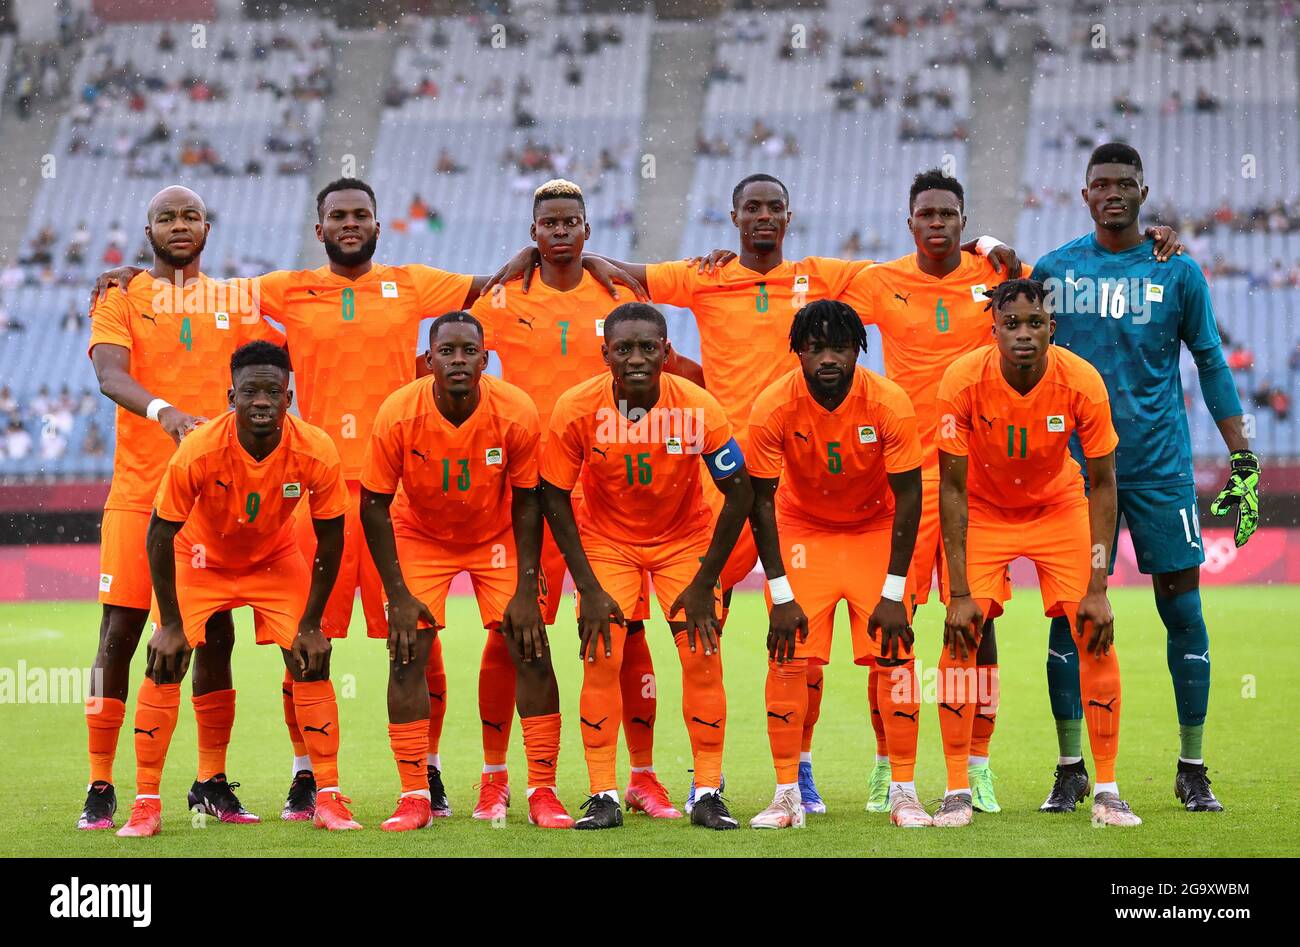 Tokyo 2020 Olympics - Soccer Football - Group D - Germany v Ivory Coast - Miyagi Stadium, Miyagi, Japan July 28, 2021. Ivory Coast players pose for a